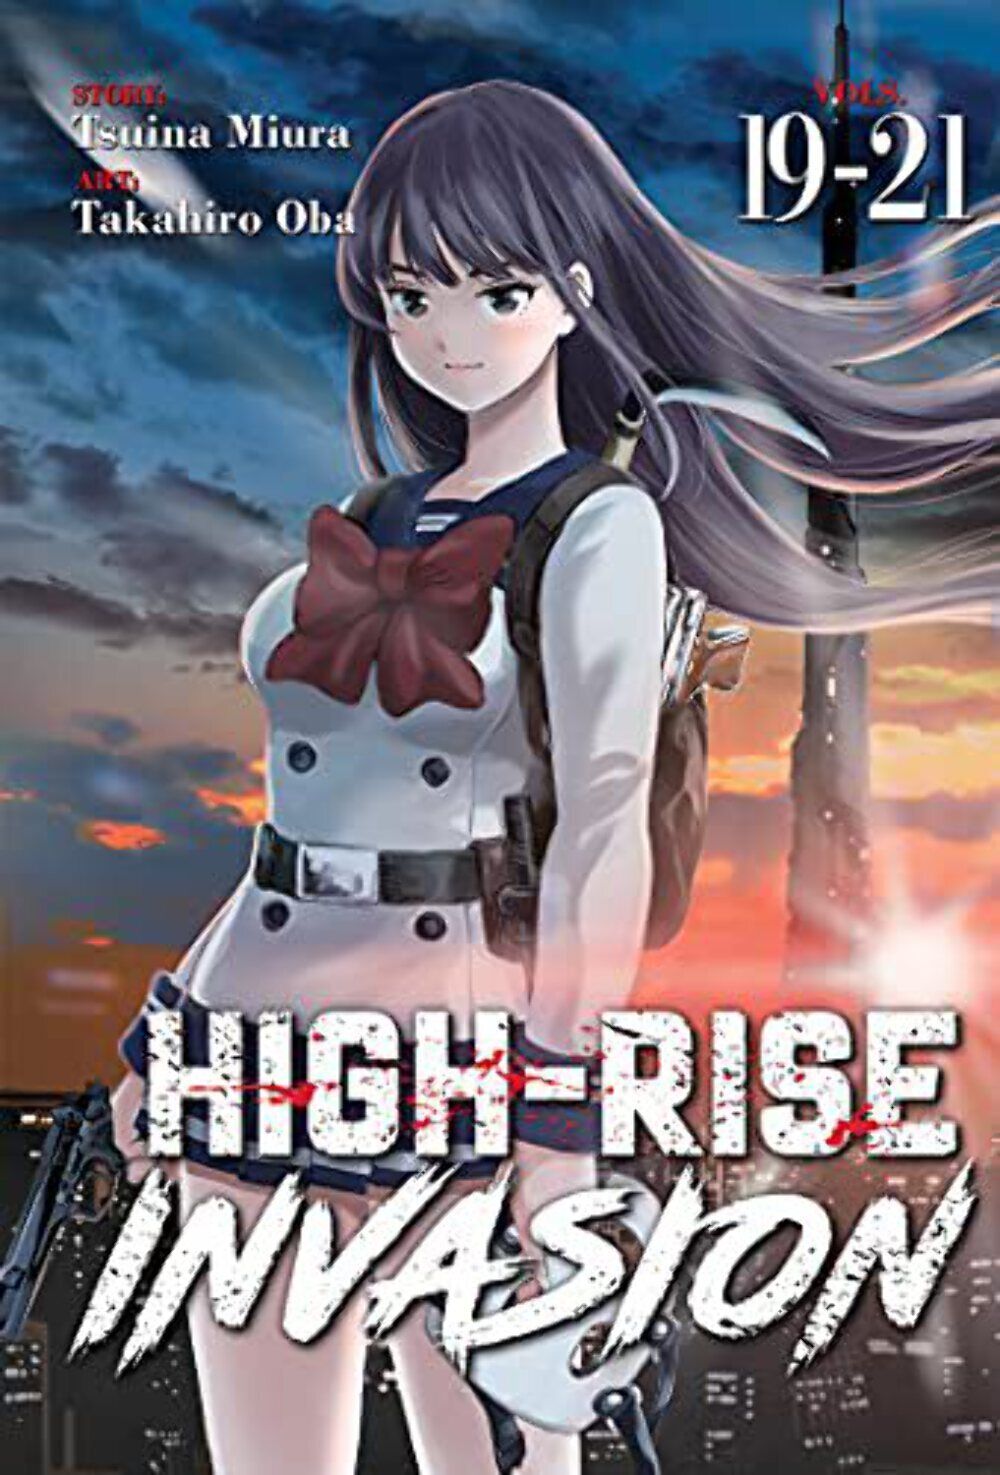 High-Rise Invasion Vol 19-21 Omnibus Used Manga English Language Graphic Novel C